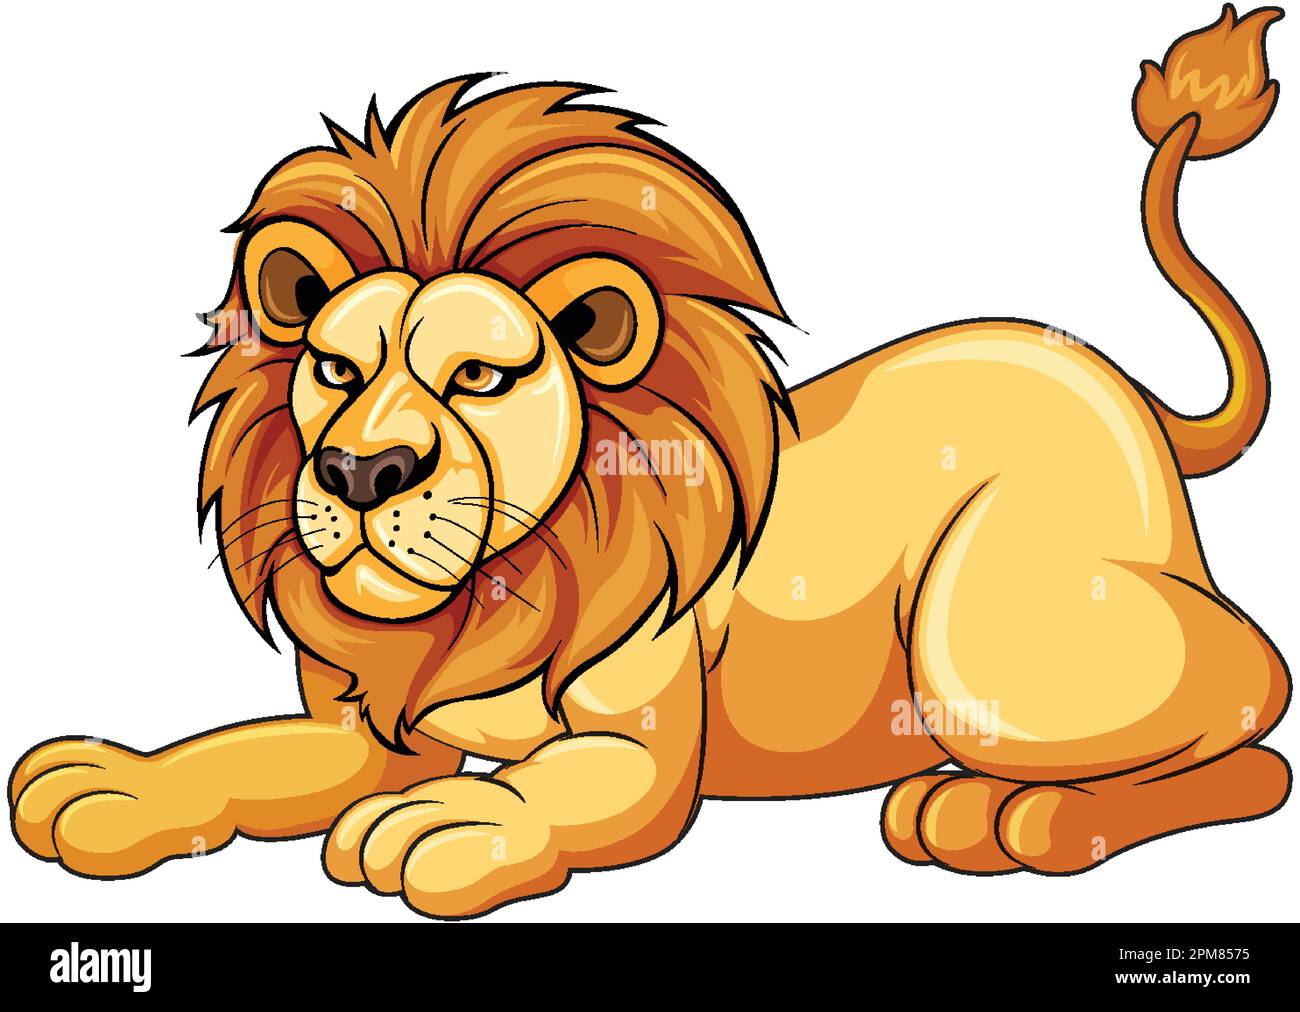 Fierce cartoon lion Royalty Free Vector Image - VectorStock